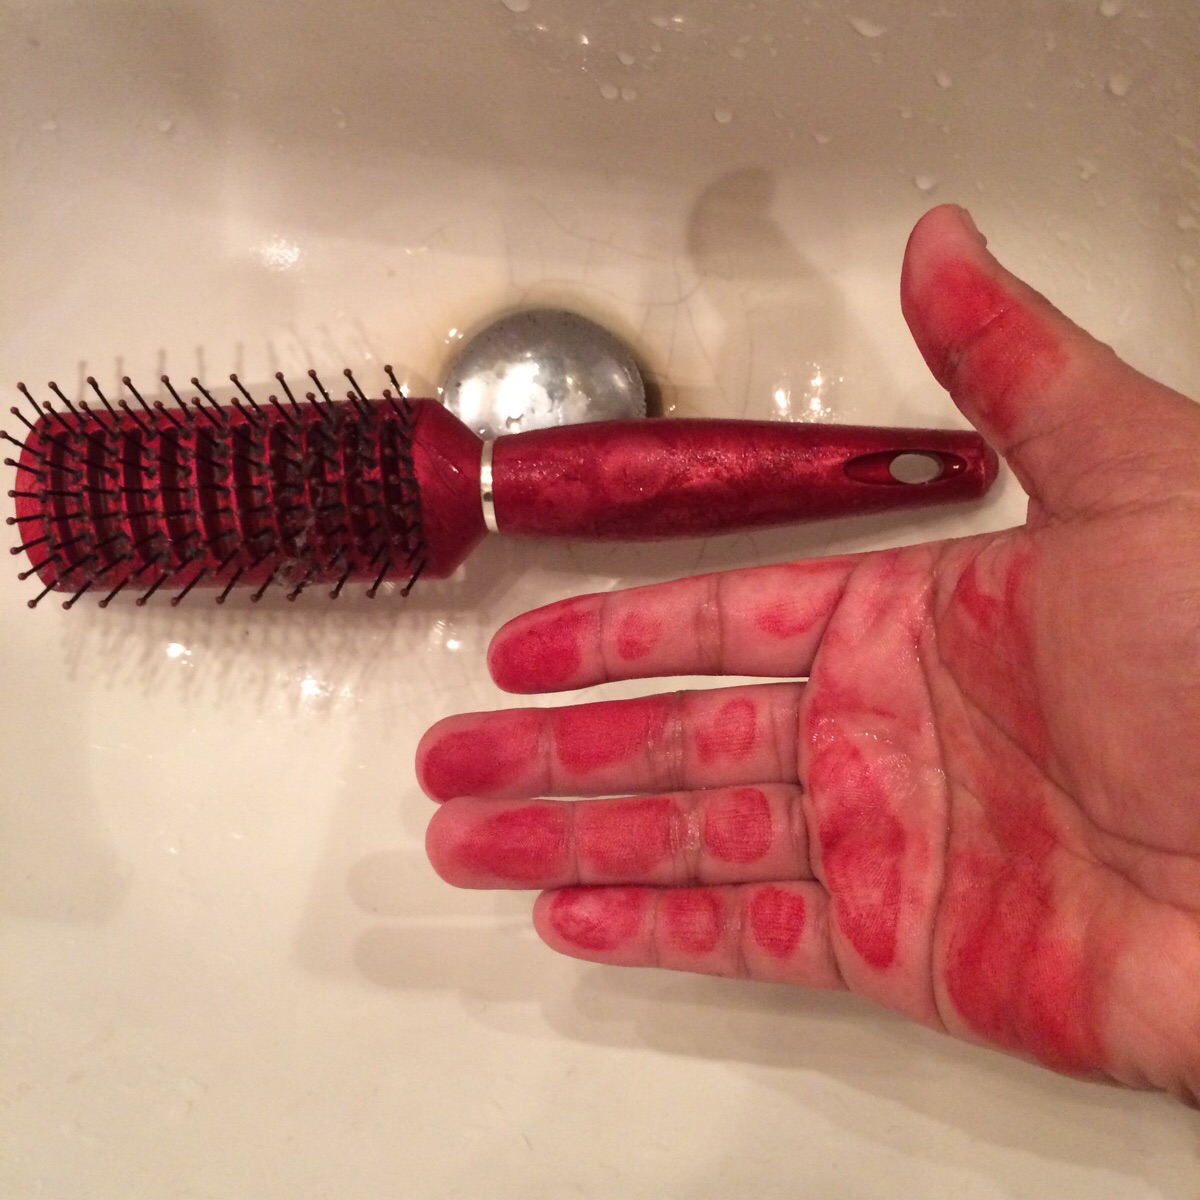 Hairbrush handle to masturbate